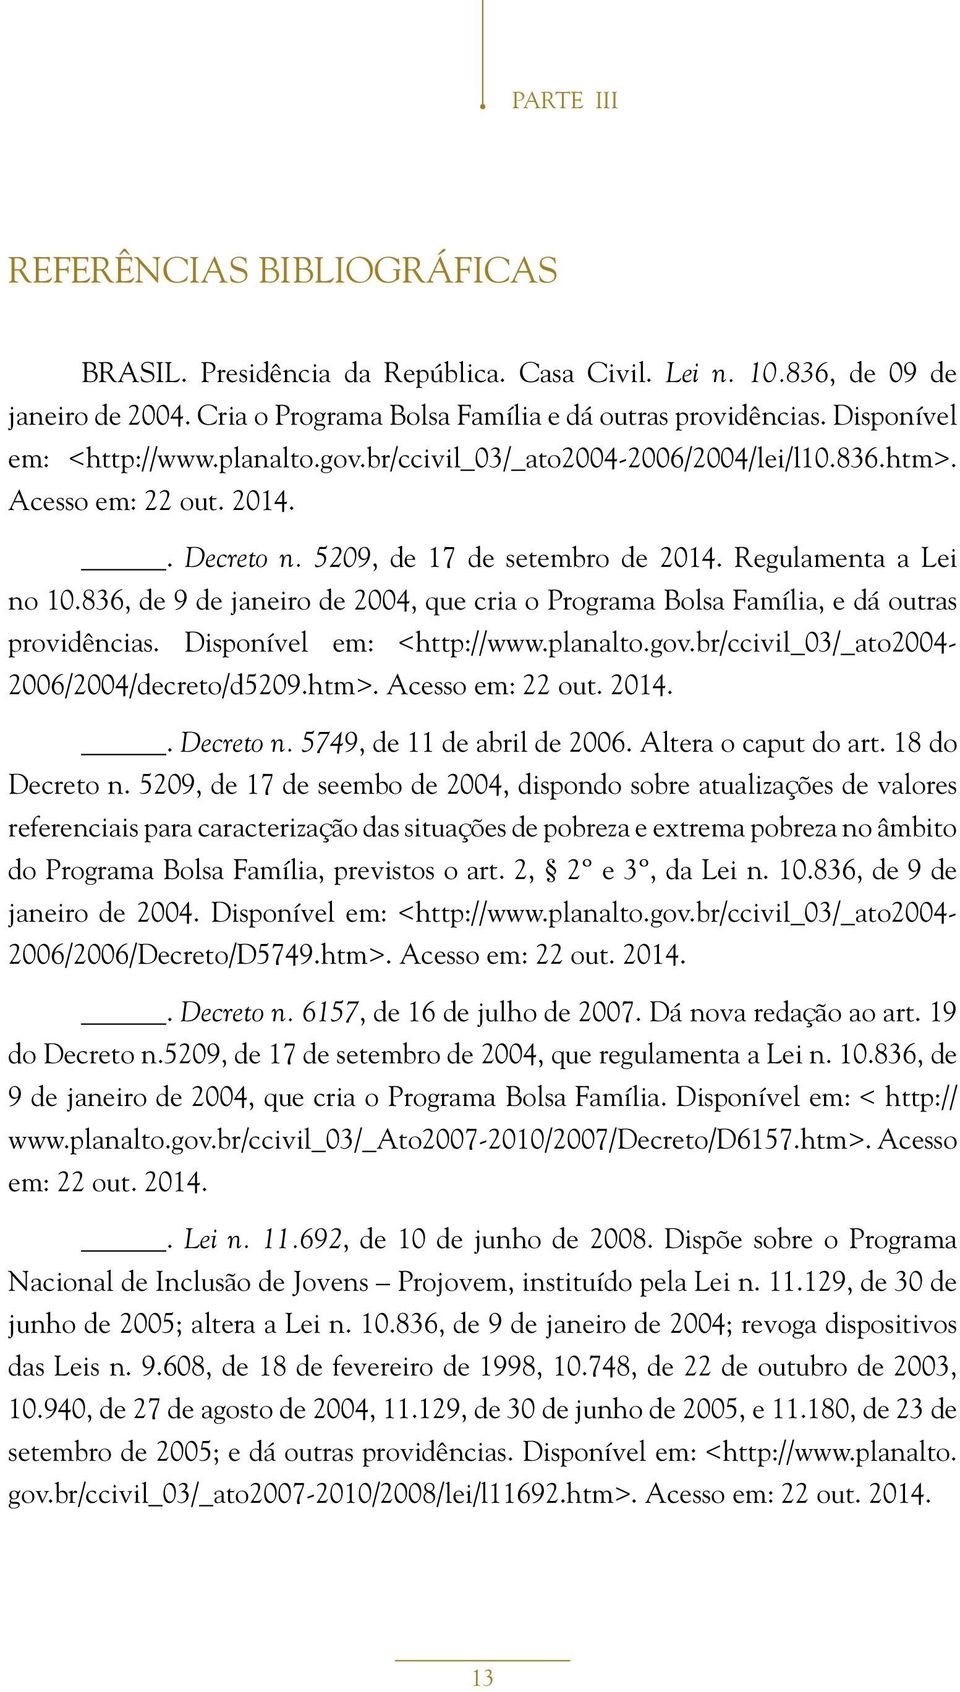 836, de 9 de janeiro de 2004, que cria o Programa Bolsa Família, e dá outras providências. Disponível em: <http://www.planalto.gov.br/ccivil_03/_ato2004-2006/2004/decreto/d5209.htm>.